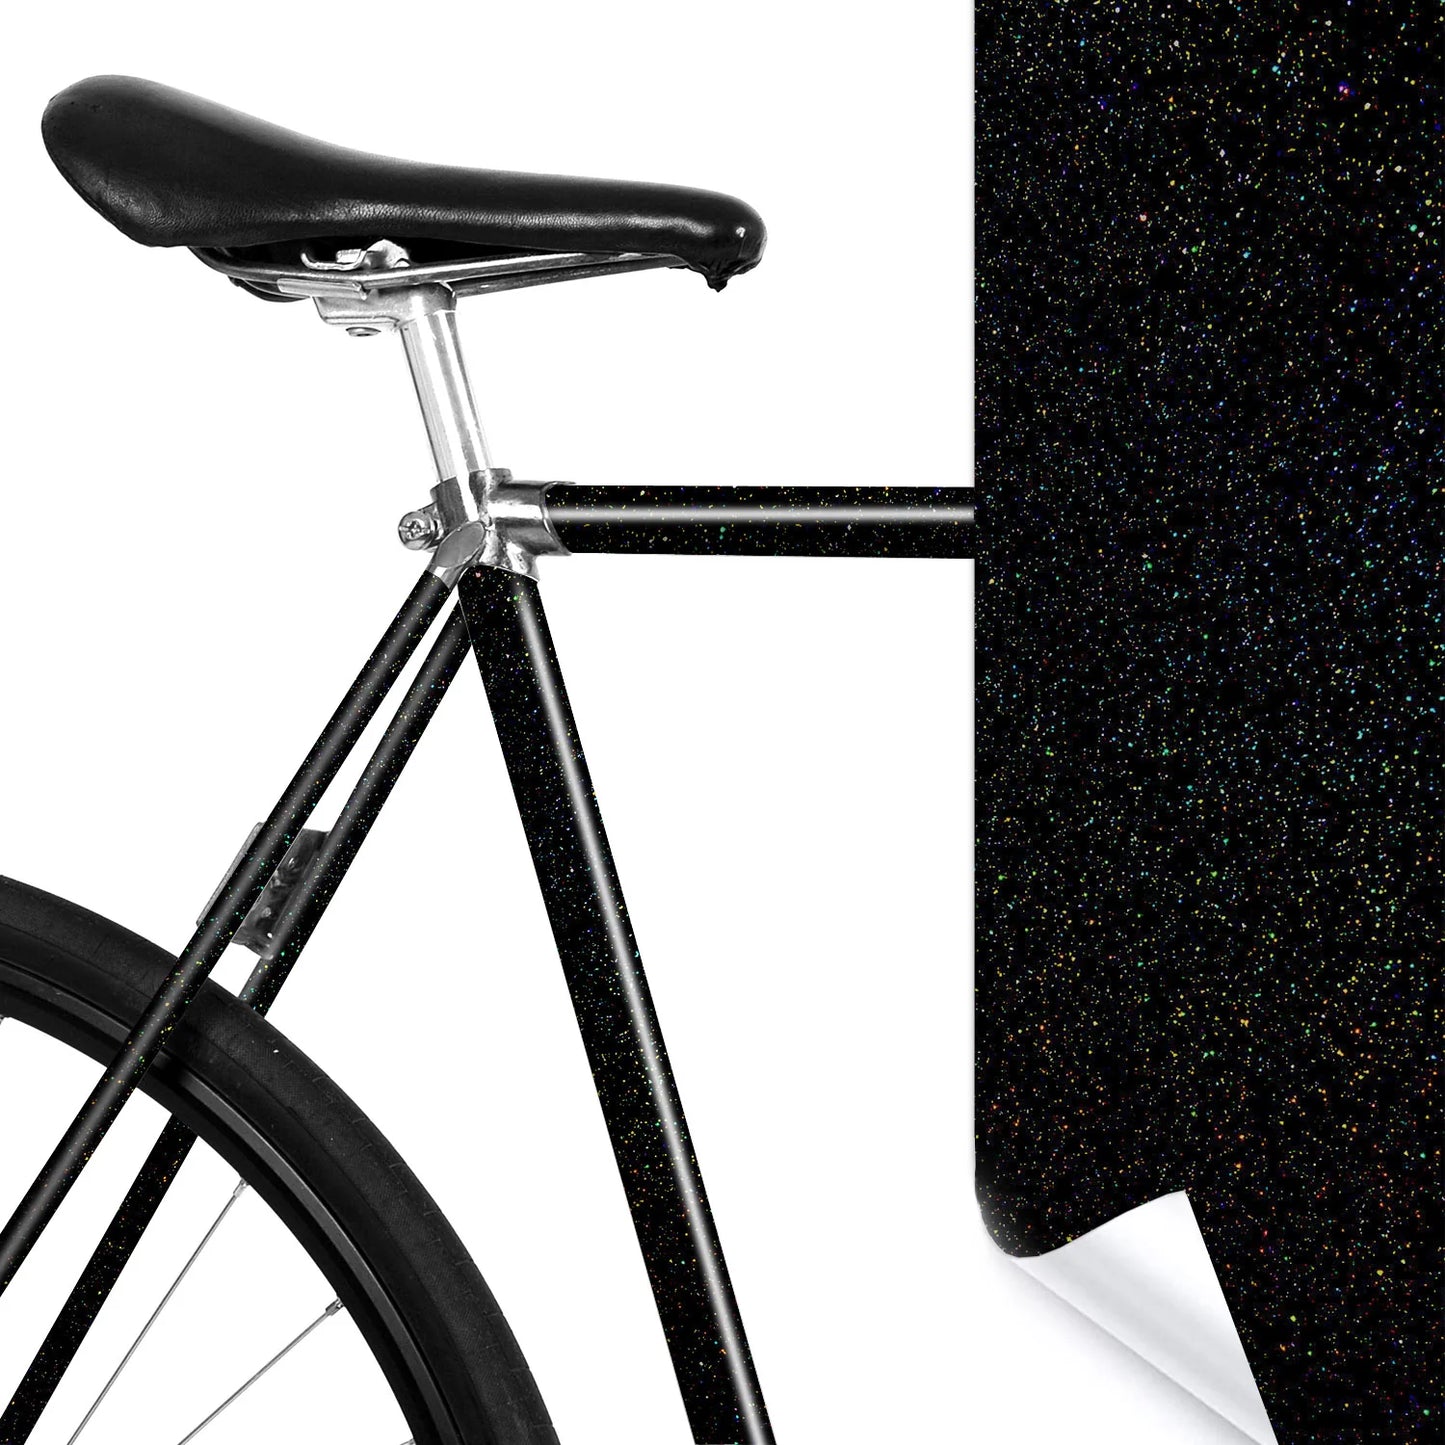 Glänzende Fahrradrahmenschutzfolie - für mehr Individualität und Schutz